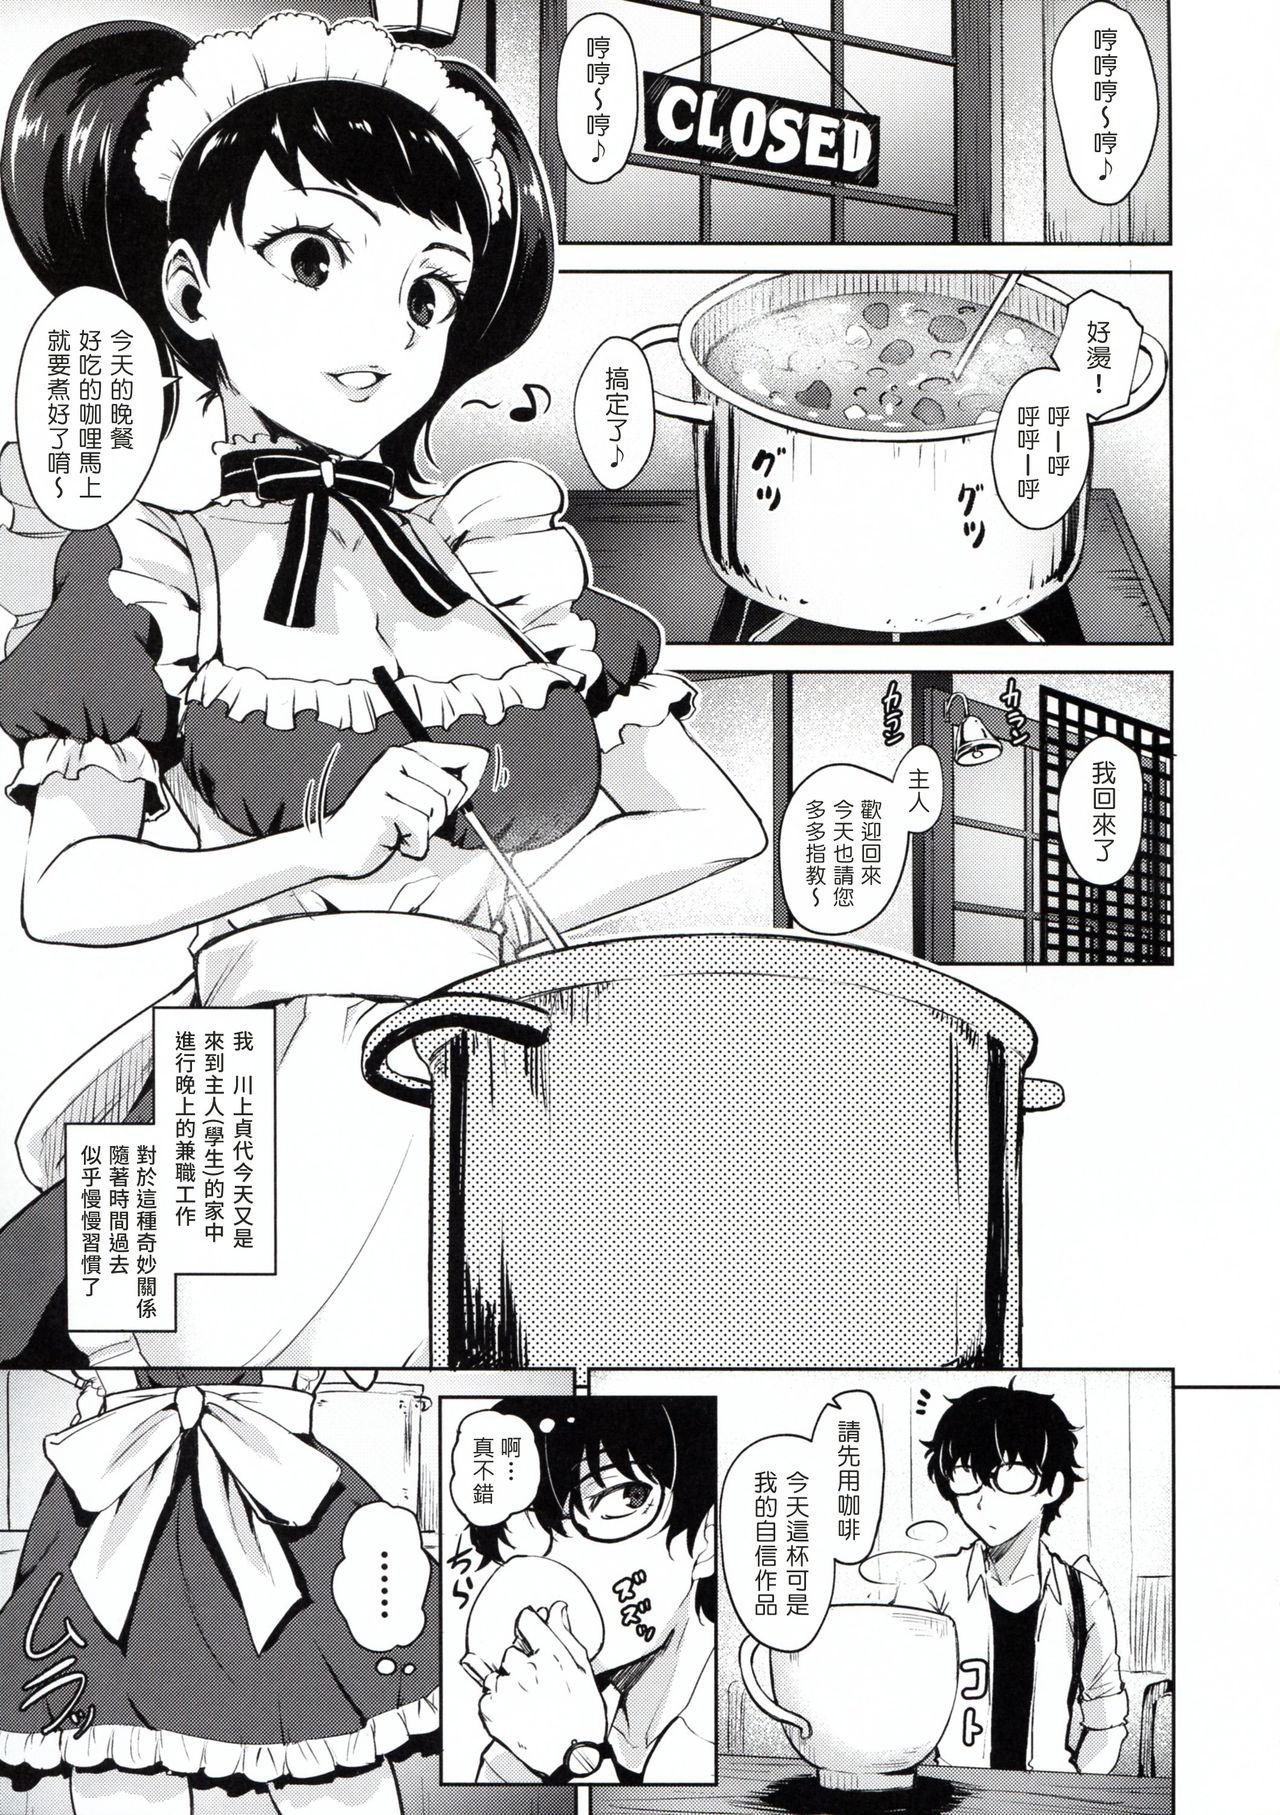 Twerk Kawakami No Maedewa Sessei Dekinai Setsu - Persona 5 Strip - Page 3